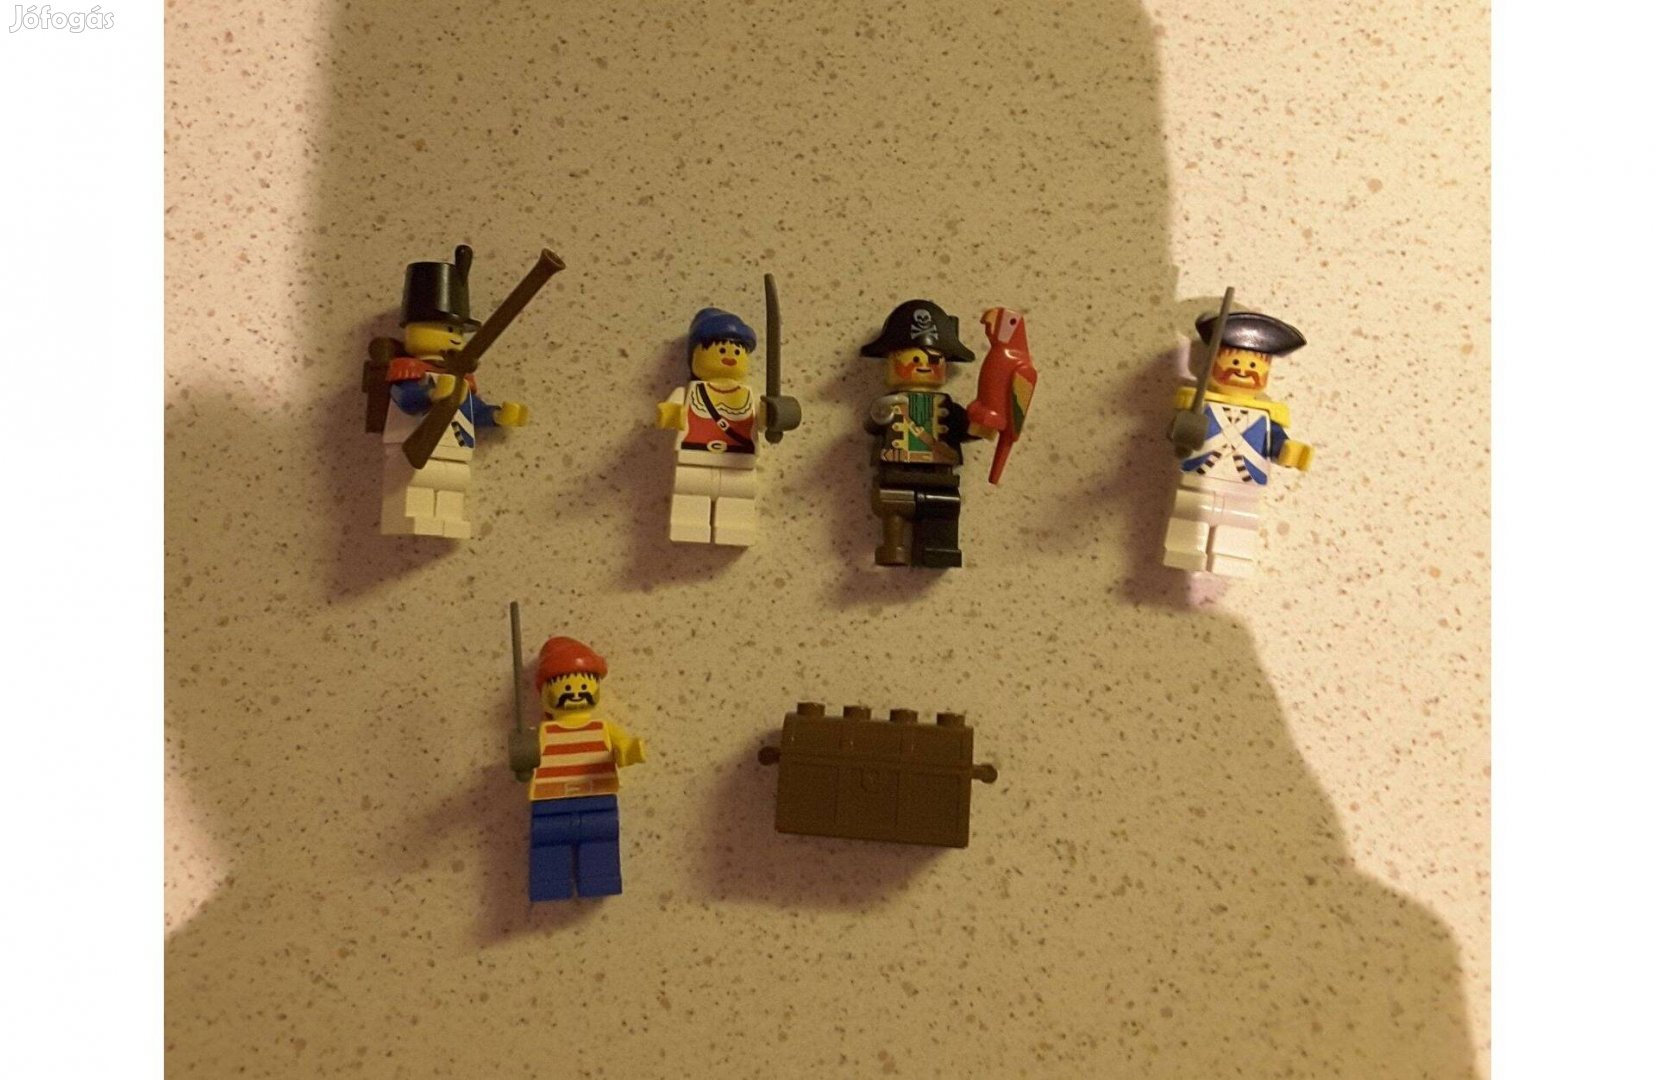 Lego 6251 Kalóz minifigurák kincsesládával / Pirate mini figures